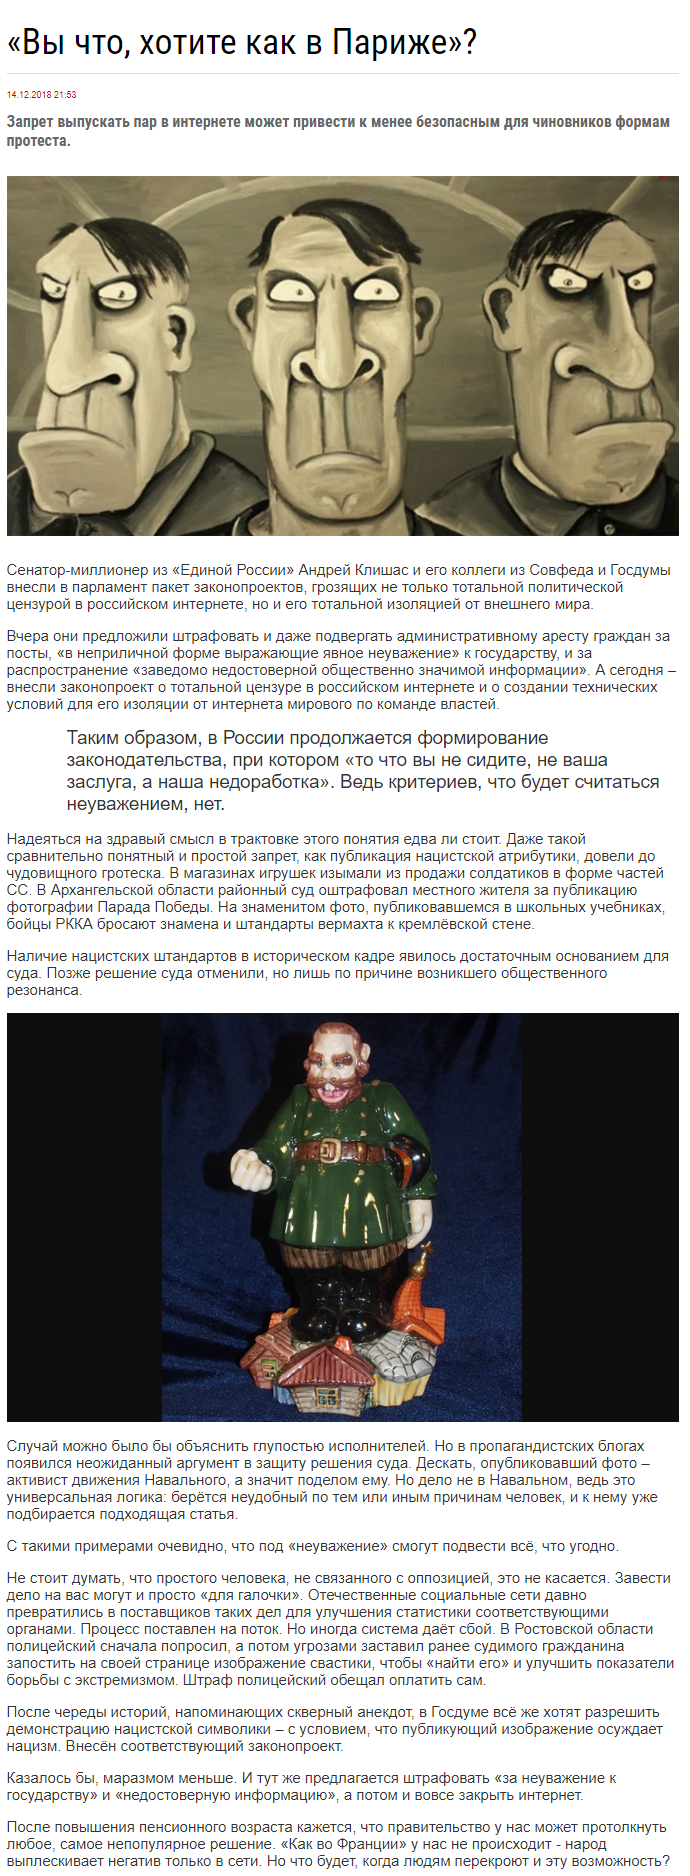 Opera Снимок_2018-12-16_121114_primechaniya.ru